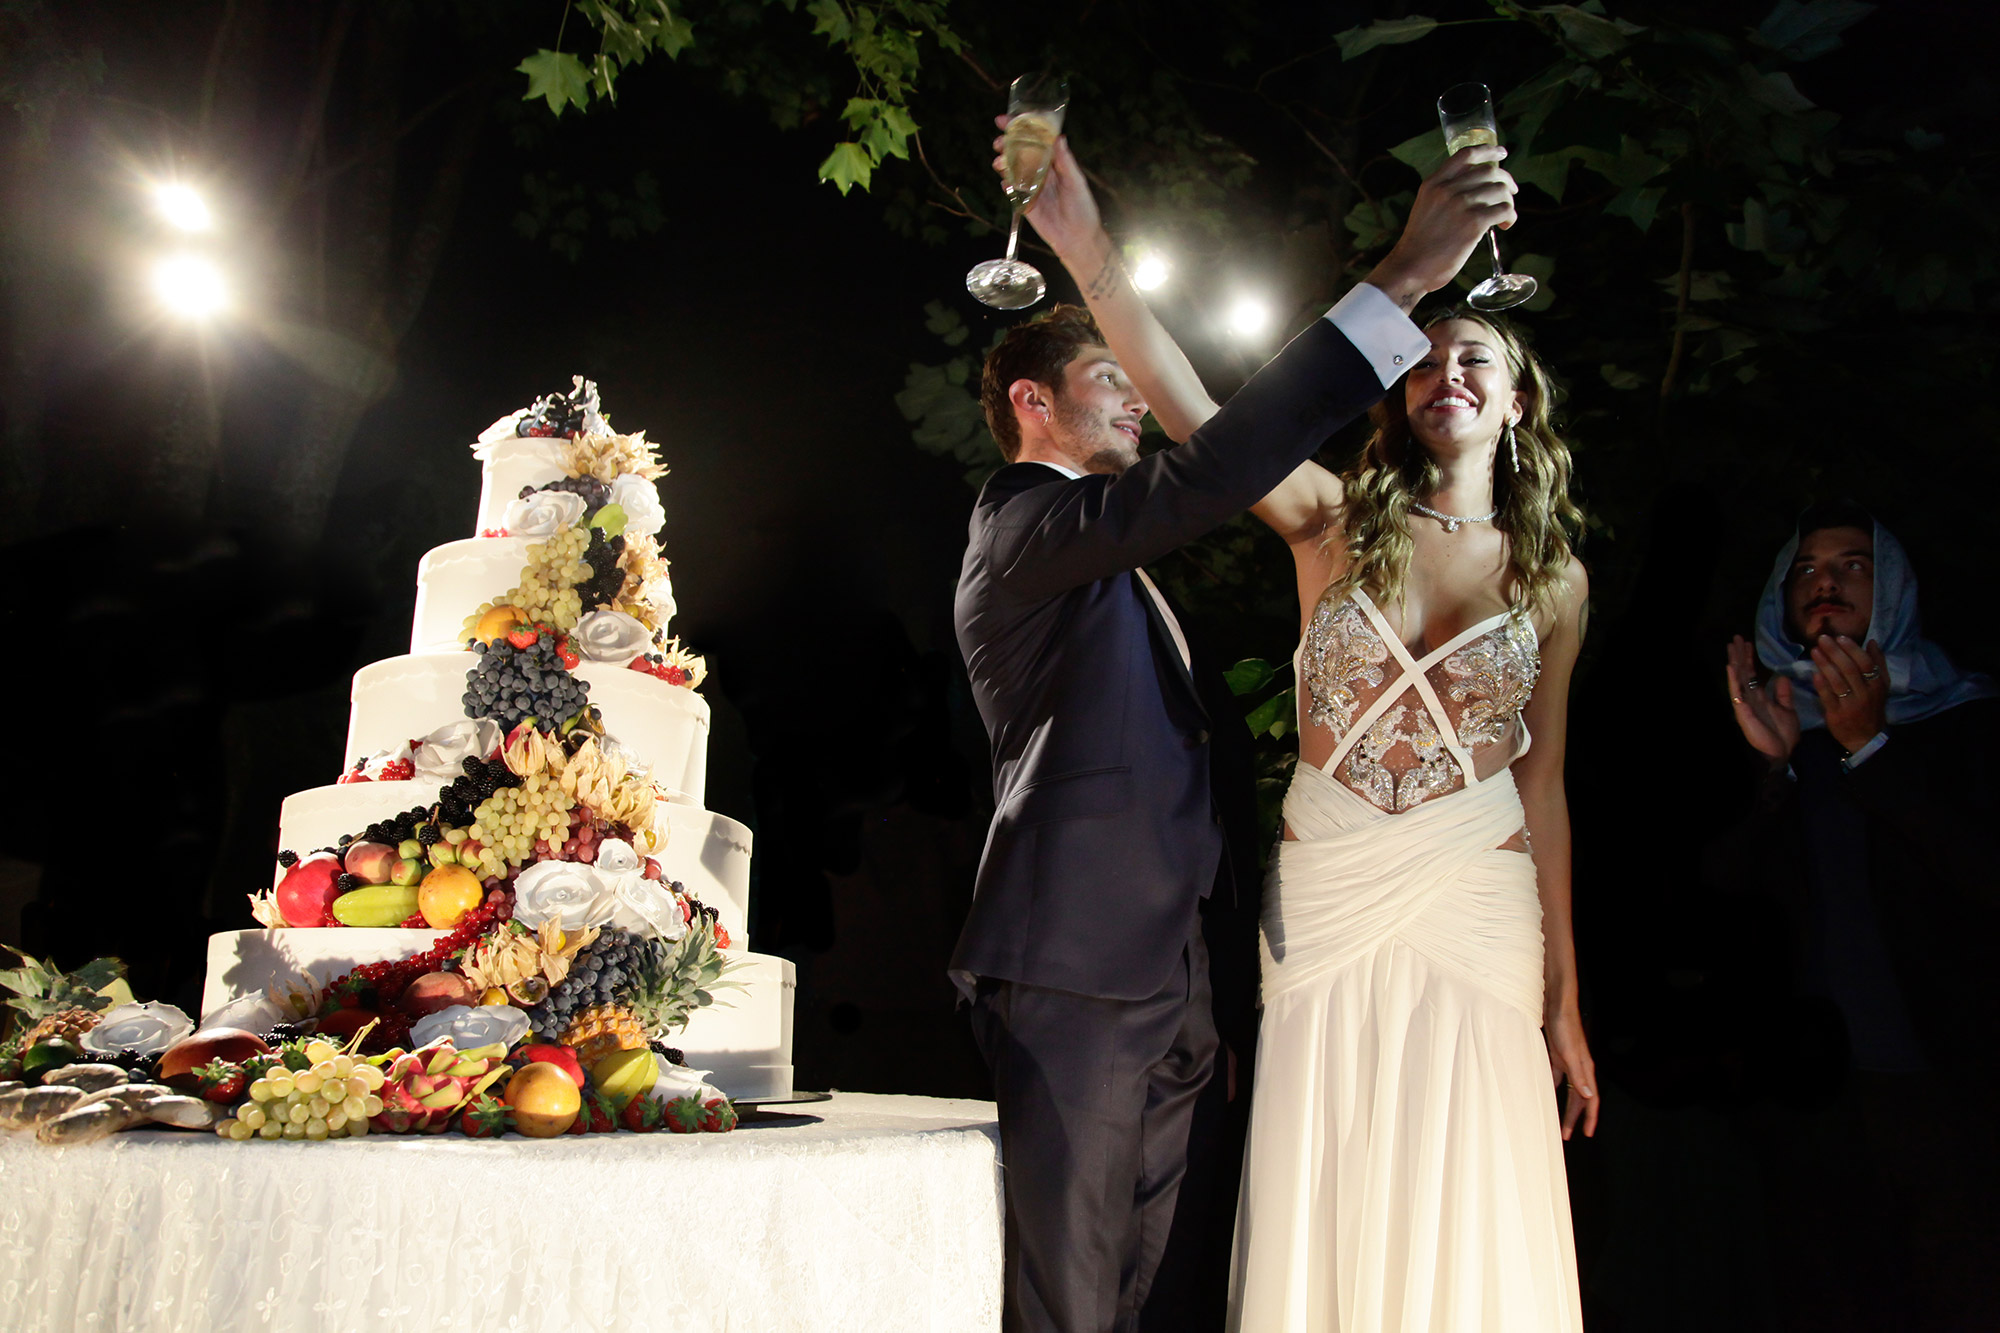 matrimonio stefano de martino e belen rodriguez wedding cake by Photo27